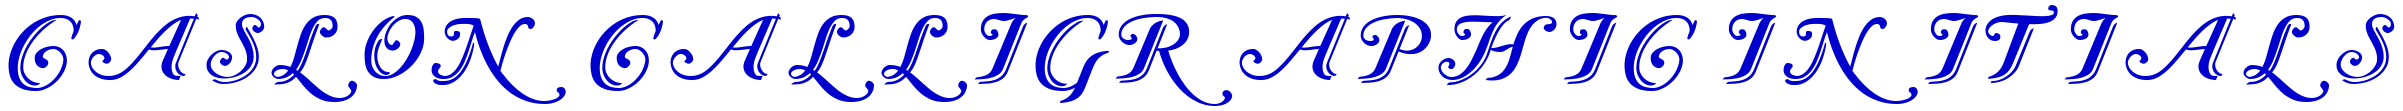 Caslon Calligraphic Initials 字体